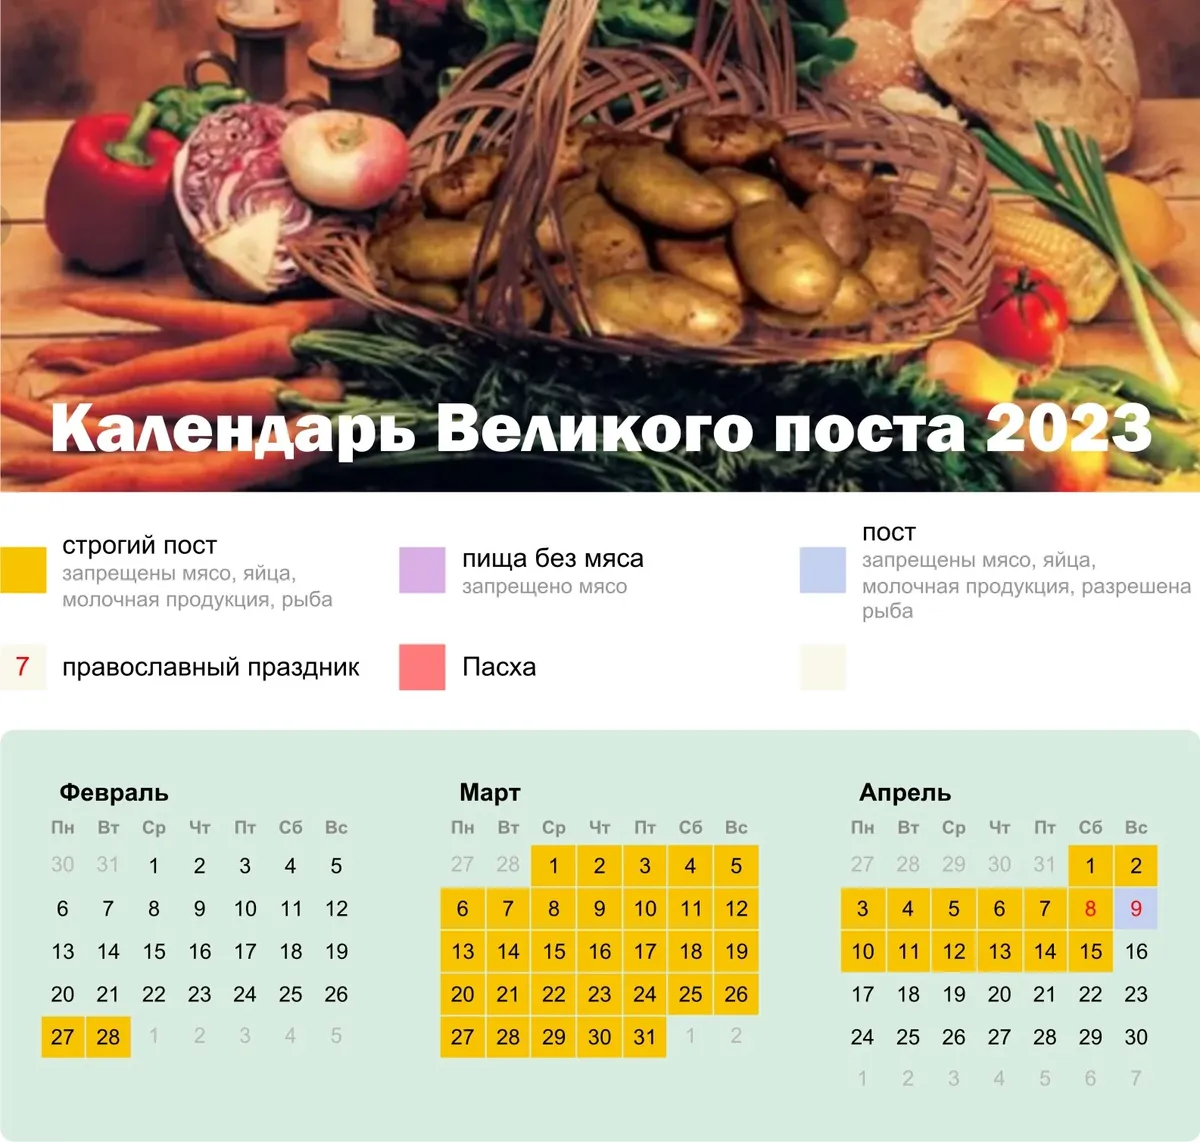 Пост перед пасхой в 2024 рыба. Календарь питания. Великий пост 2023 календарь питания. Питание в дни Великого поста. Календарь питания в Великий пост 2023 года.